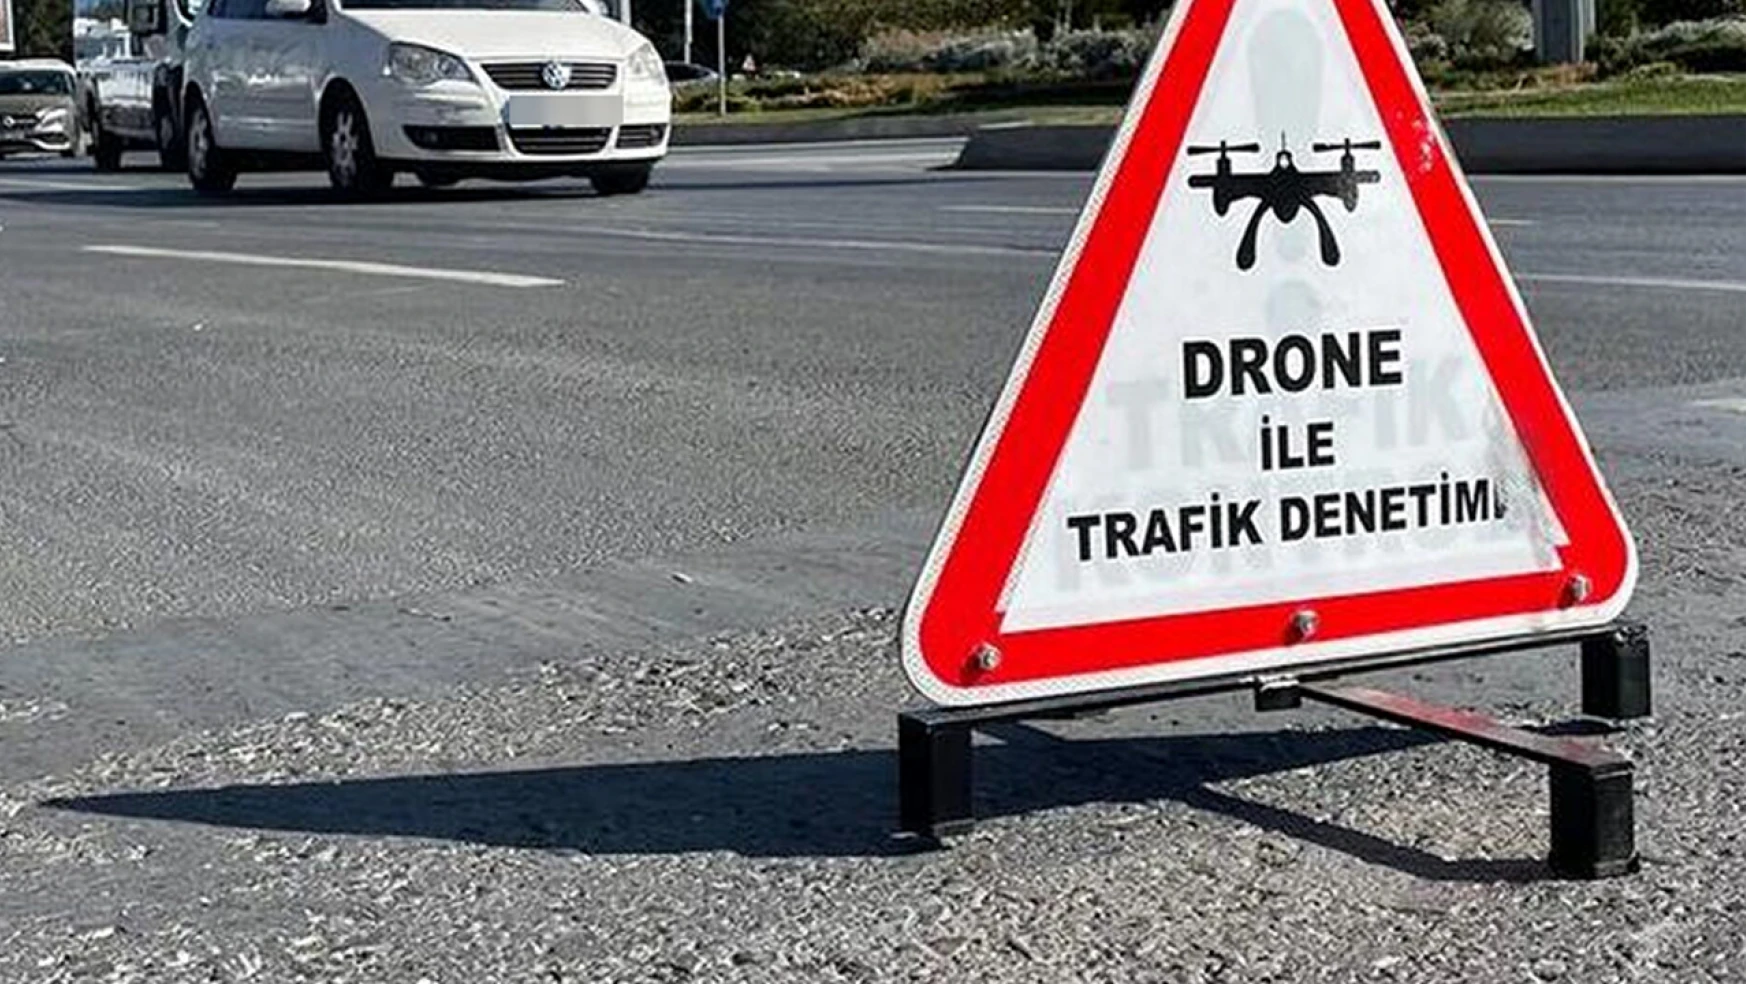 Kahramanmaraş'ta drone denetimleri 4 Mart'a kadar sürecek